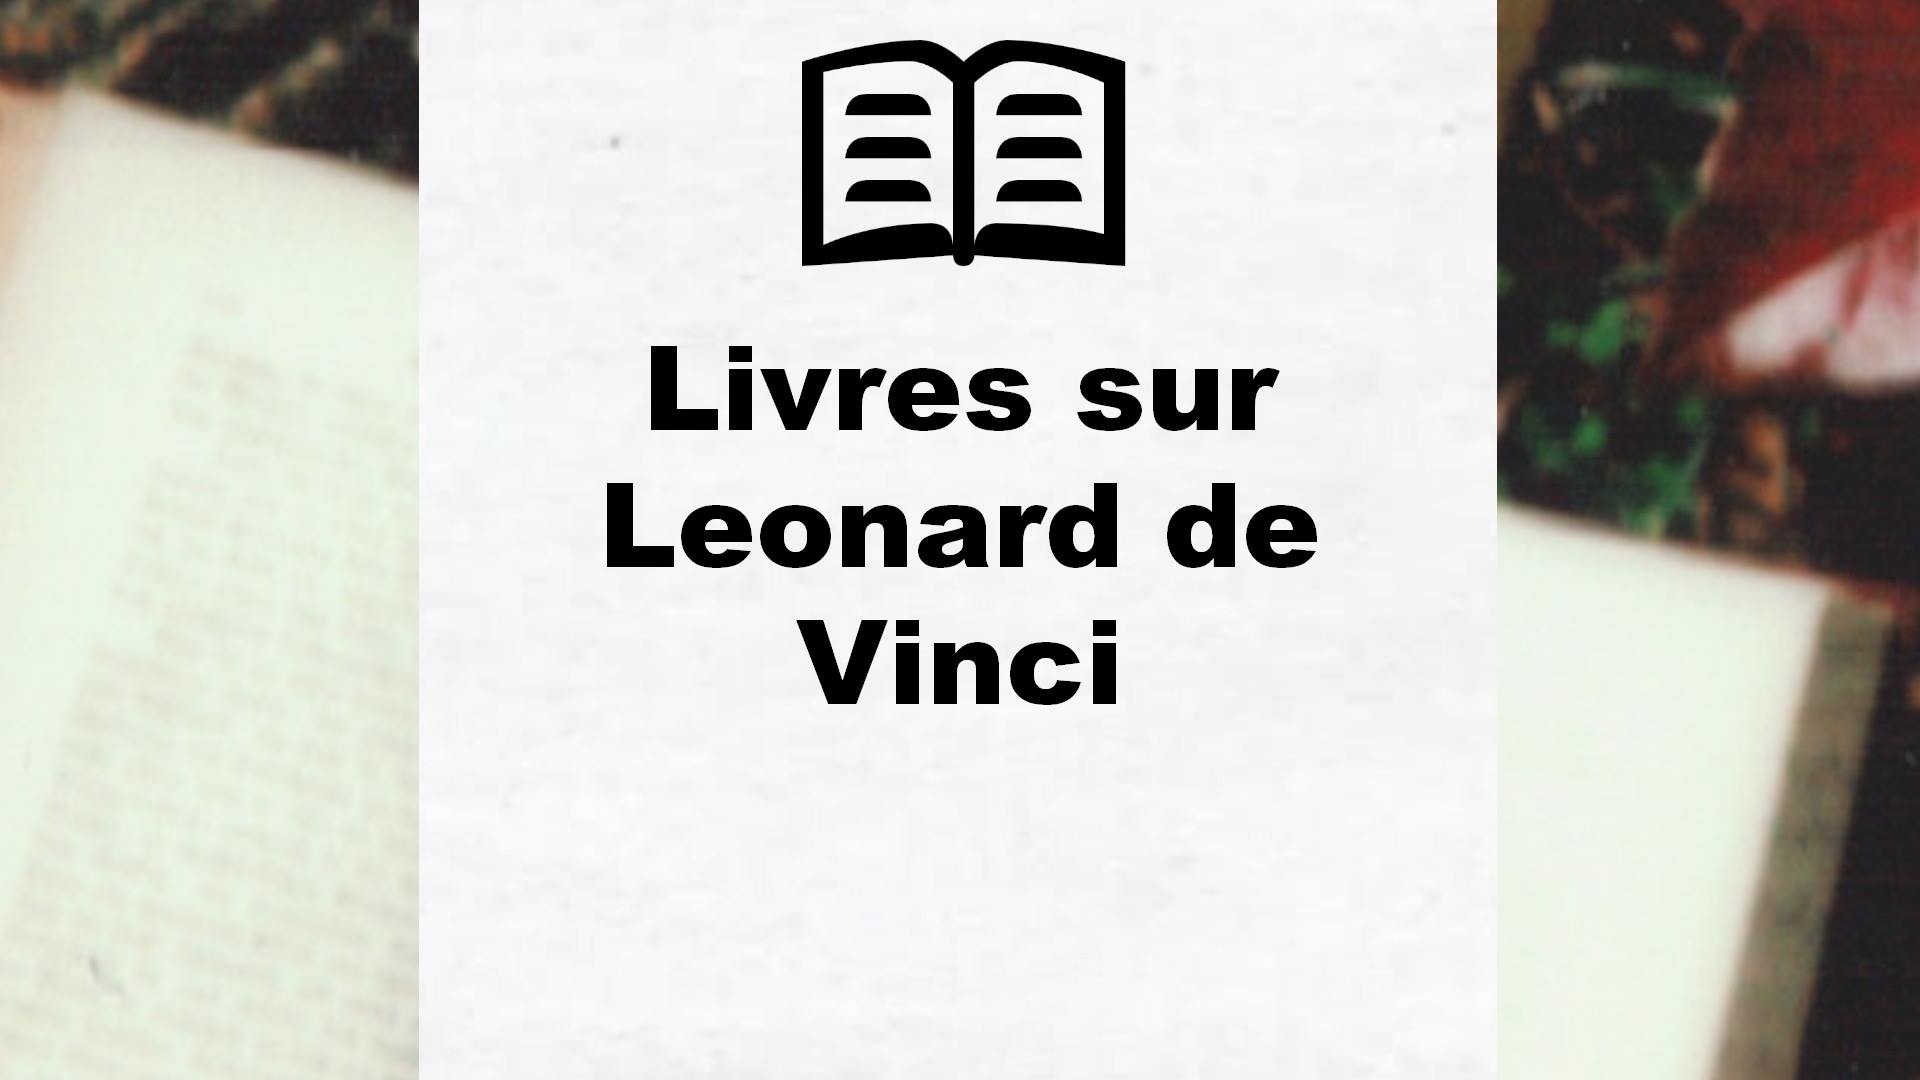 Livres sur Leonard de Vinci